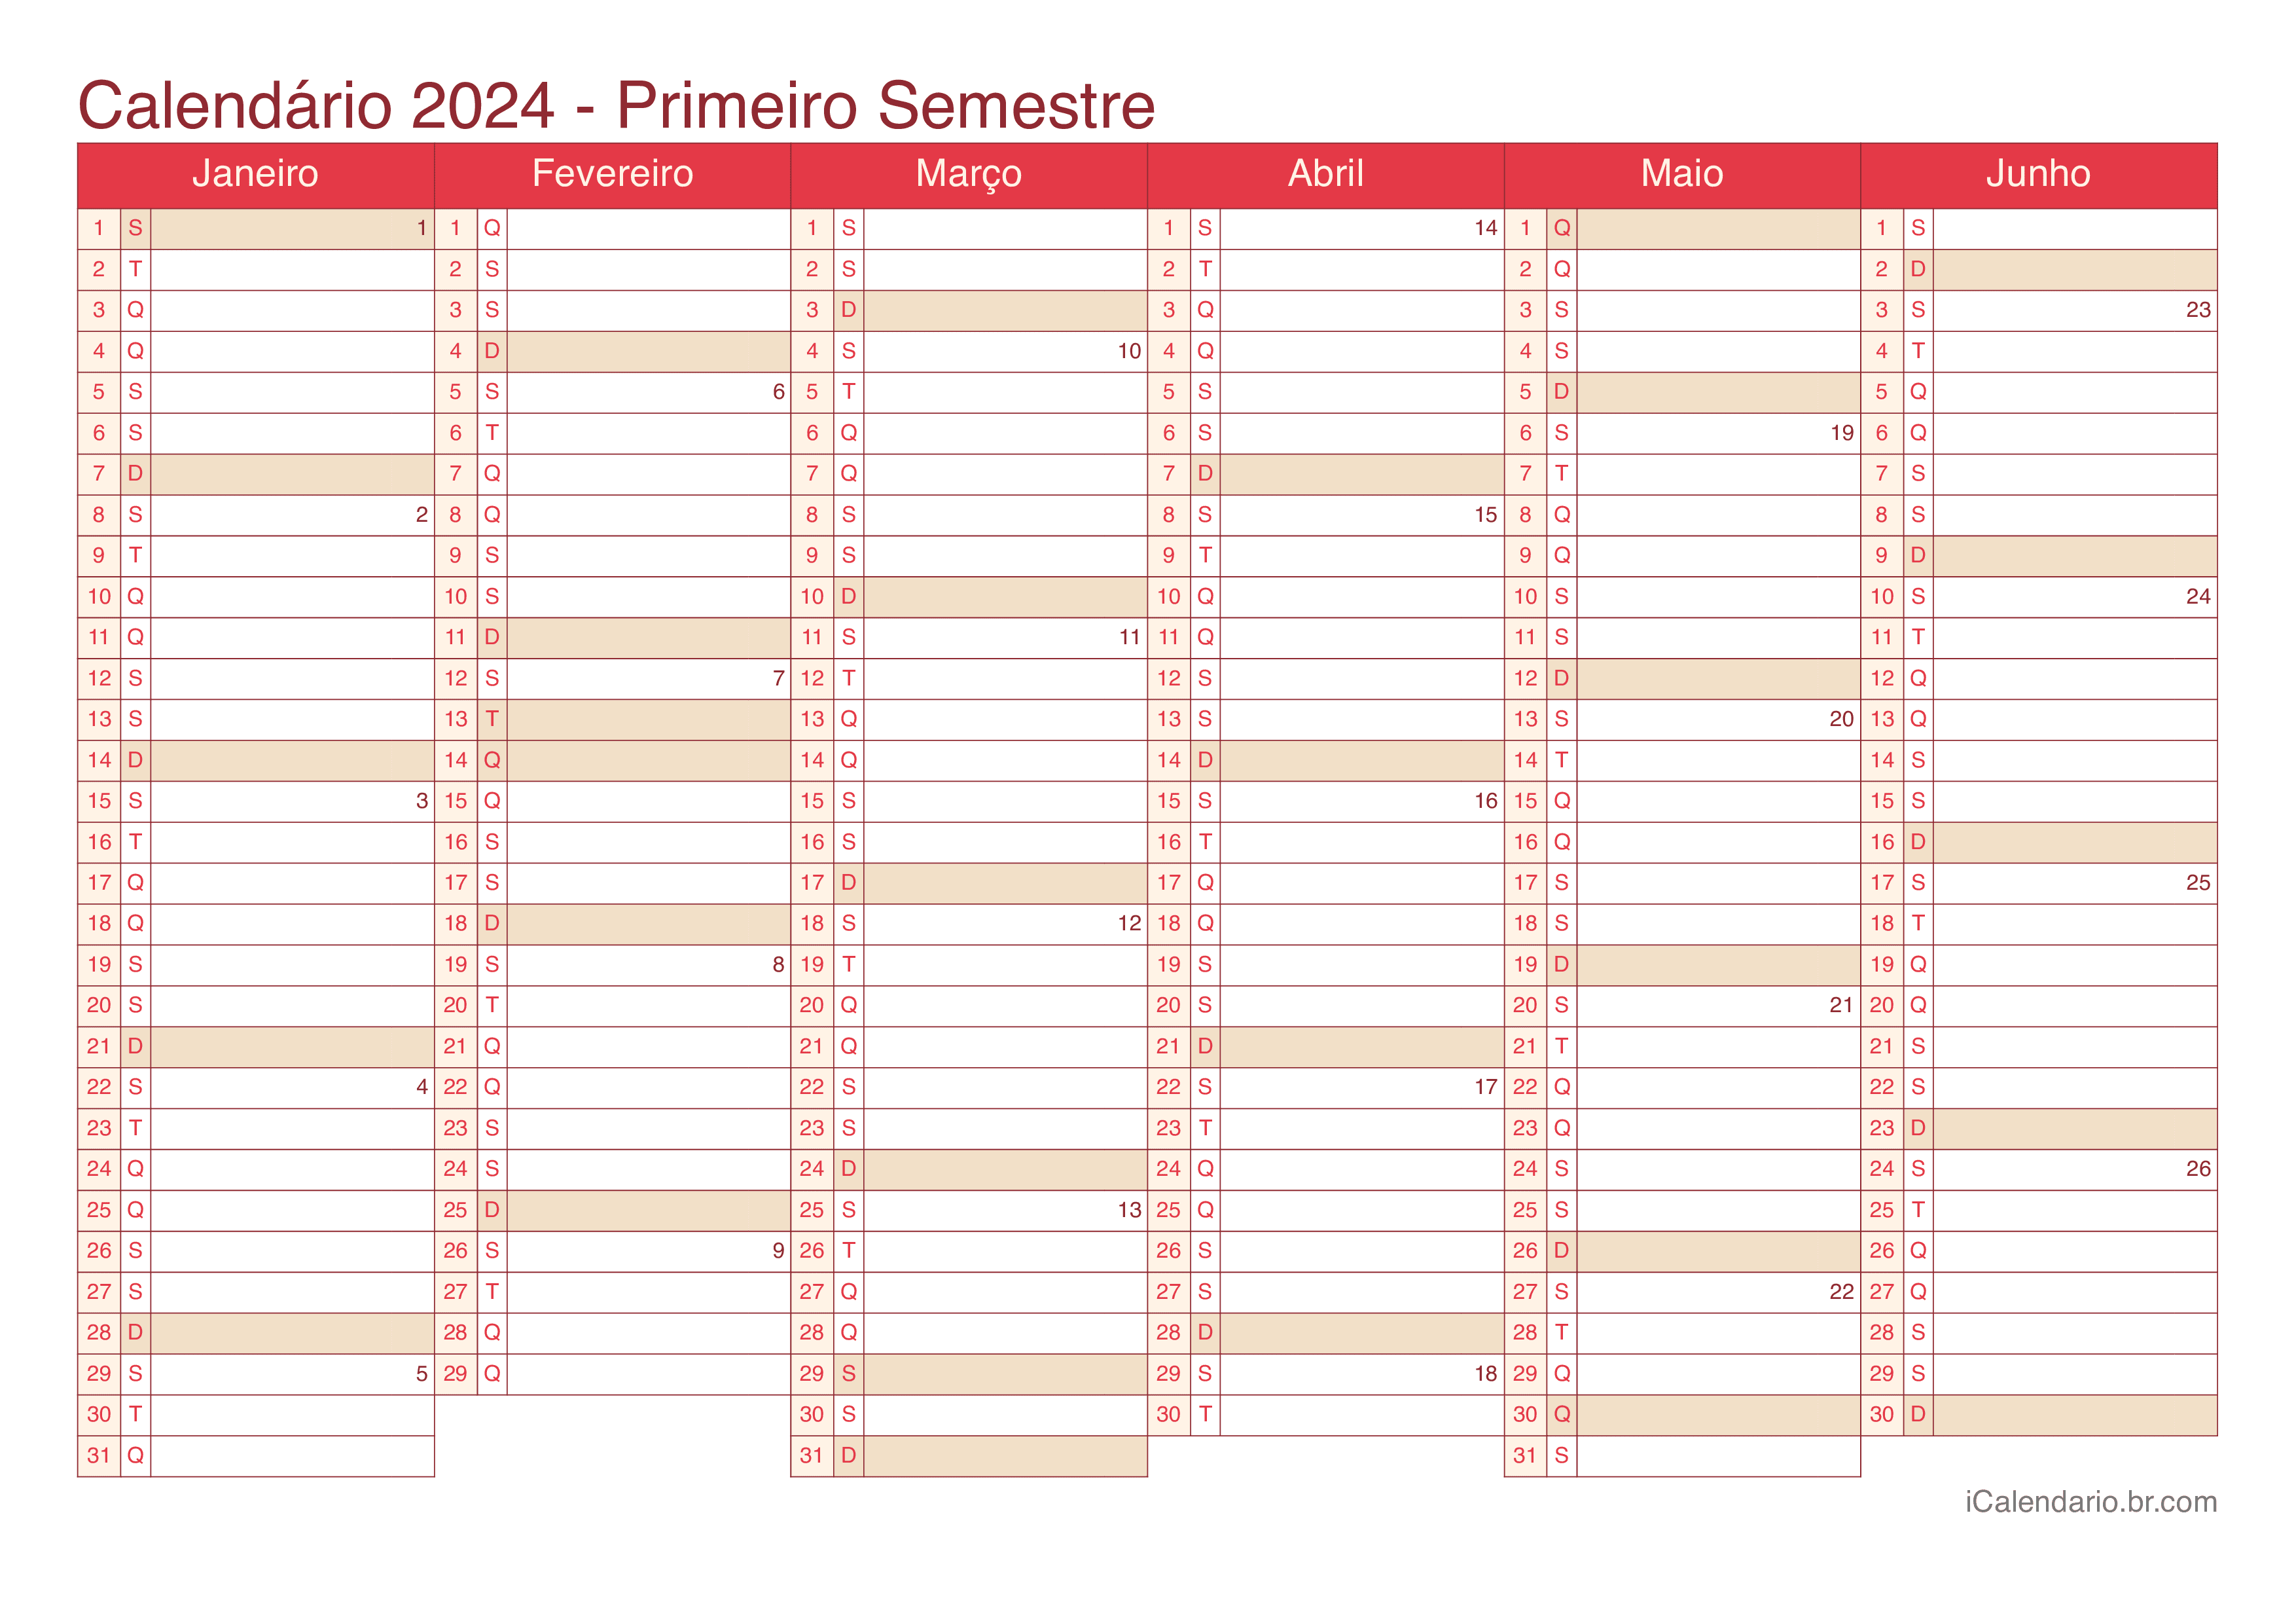 Calendário por semestre com números da semana 2024 - Cherry